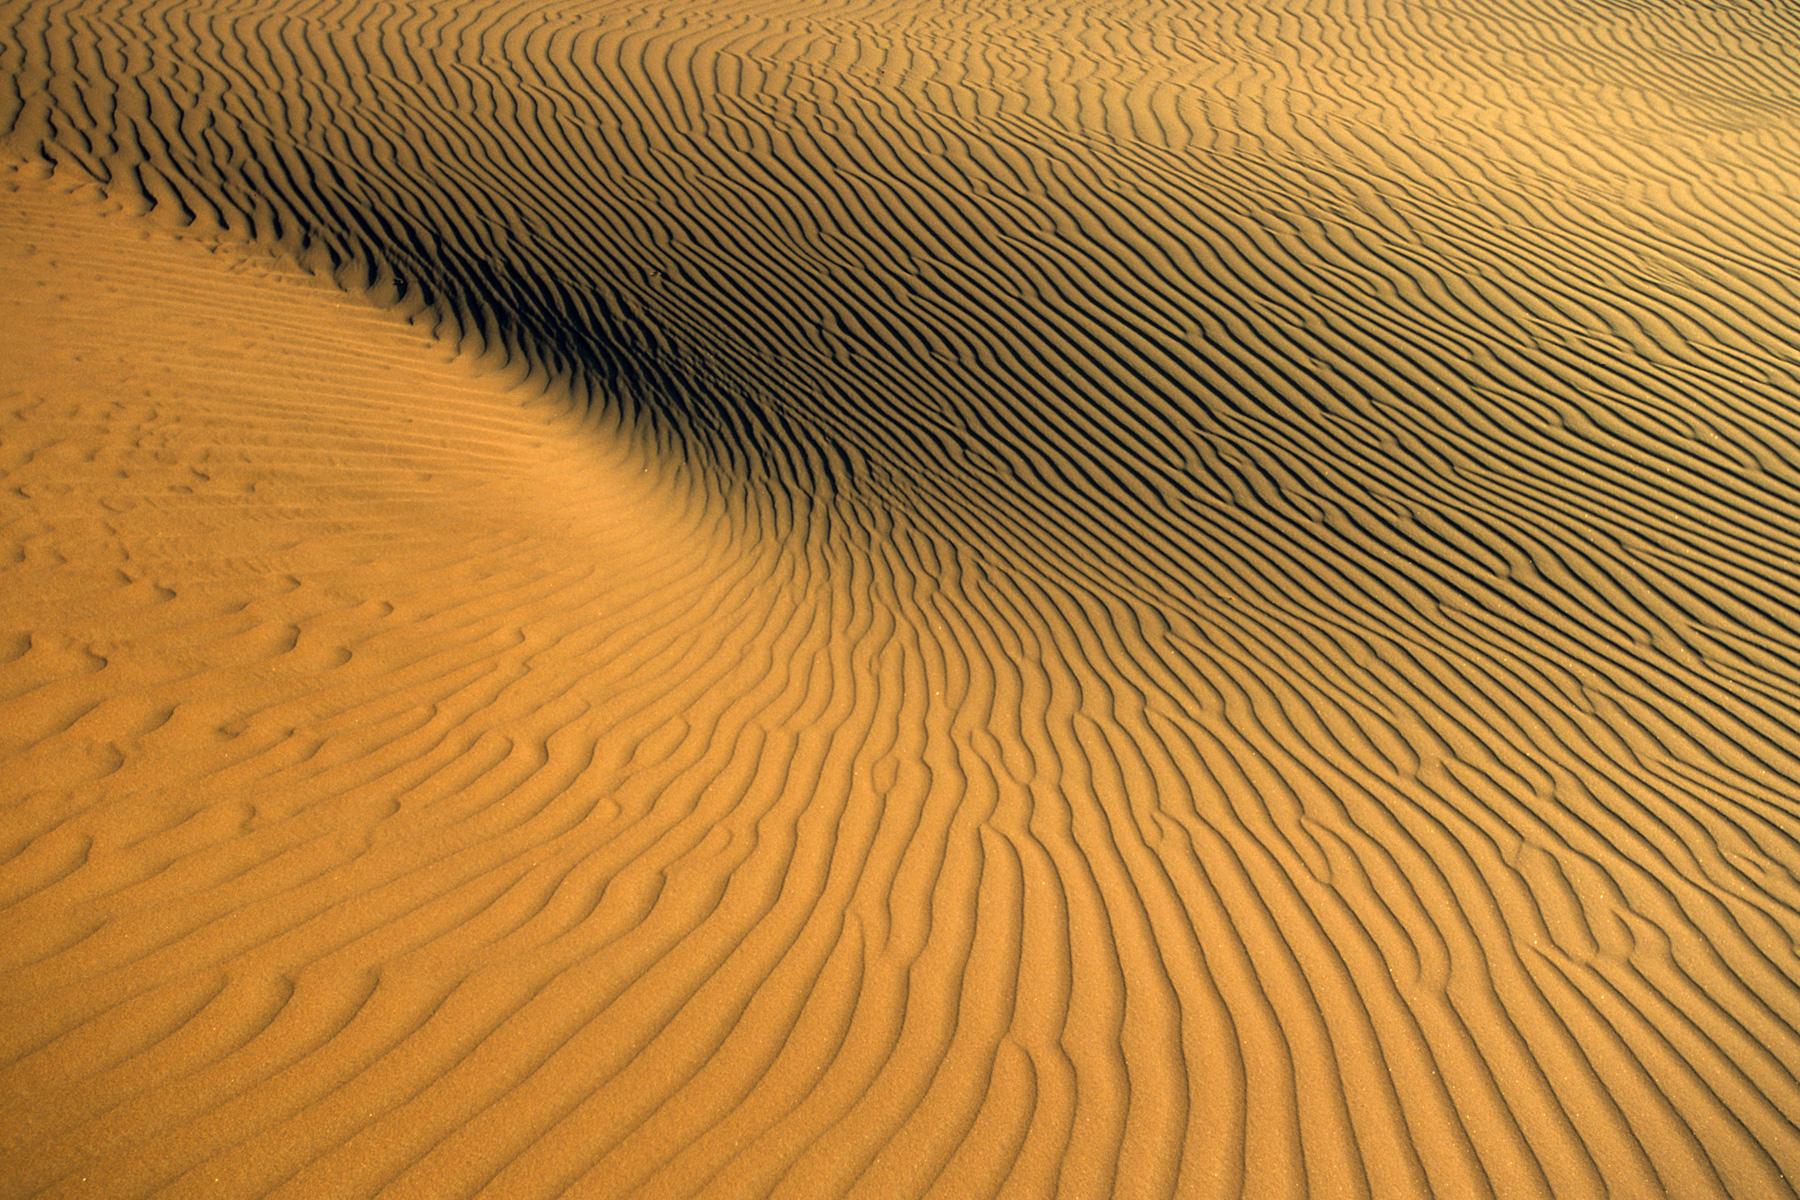  Jeu de lumière  sur les rides de sable dans les dunes de l'Erg Oubari (Lybie).